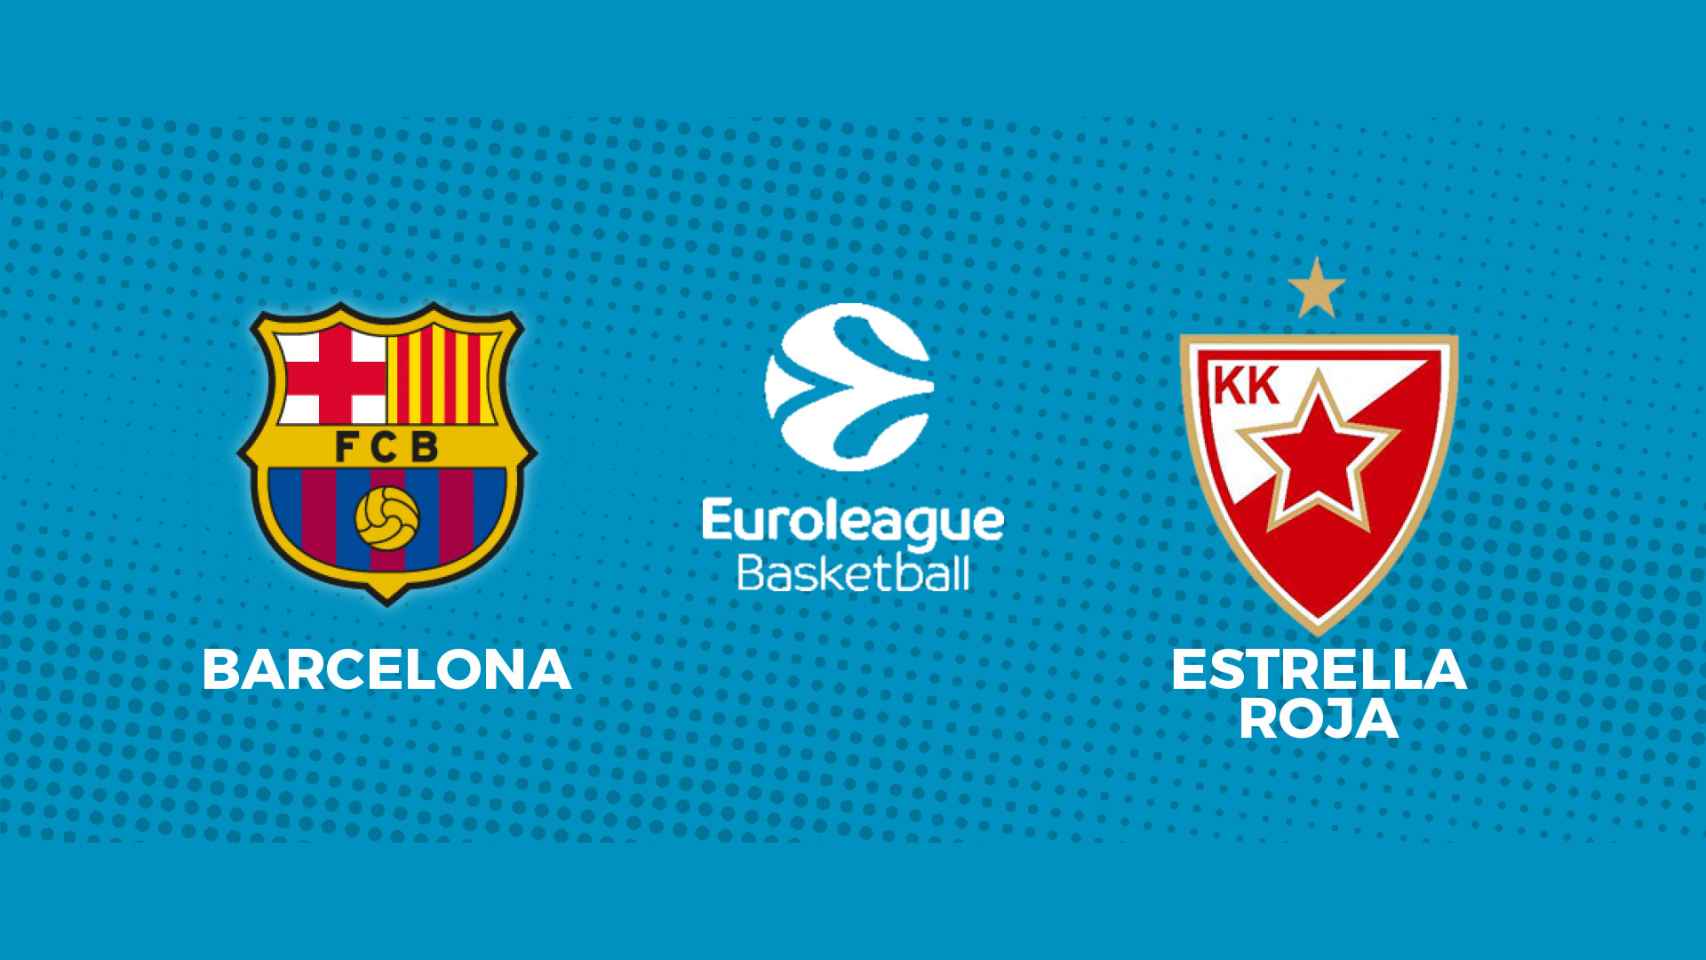 Barcelona - Estrella Roja, la Euroliga en directo